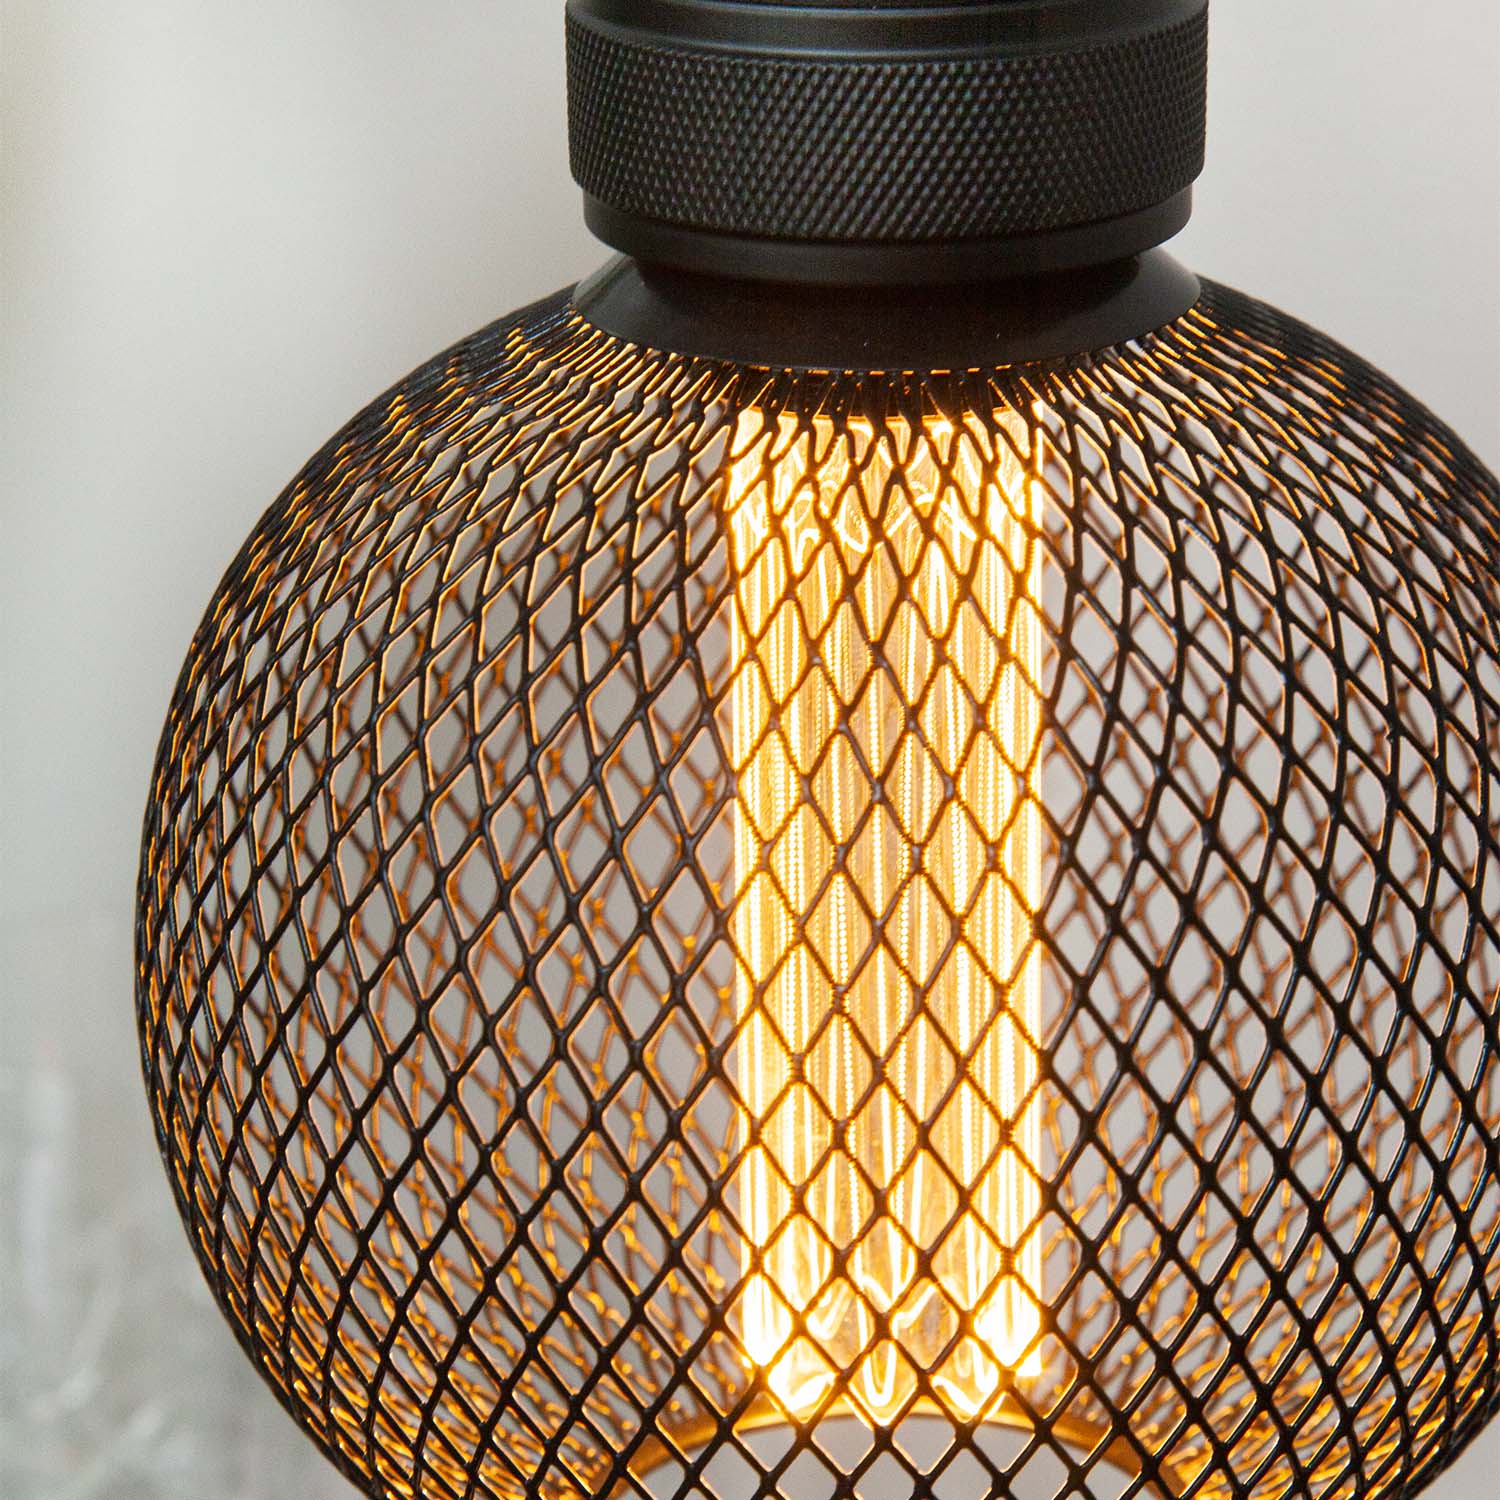 Gitter - E27 LED-Glühbirne im schwarzen Gitterdesign